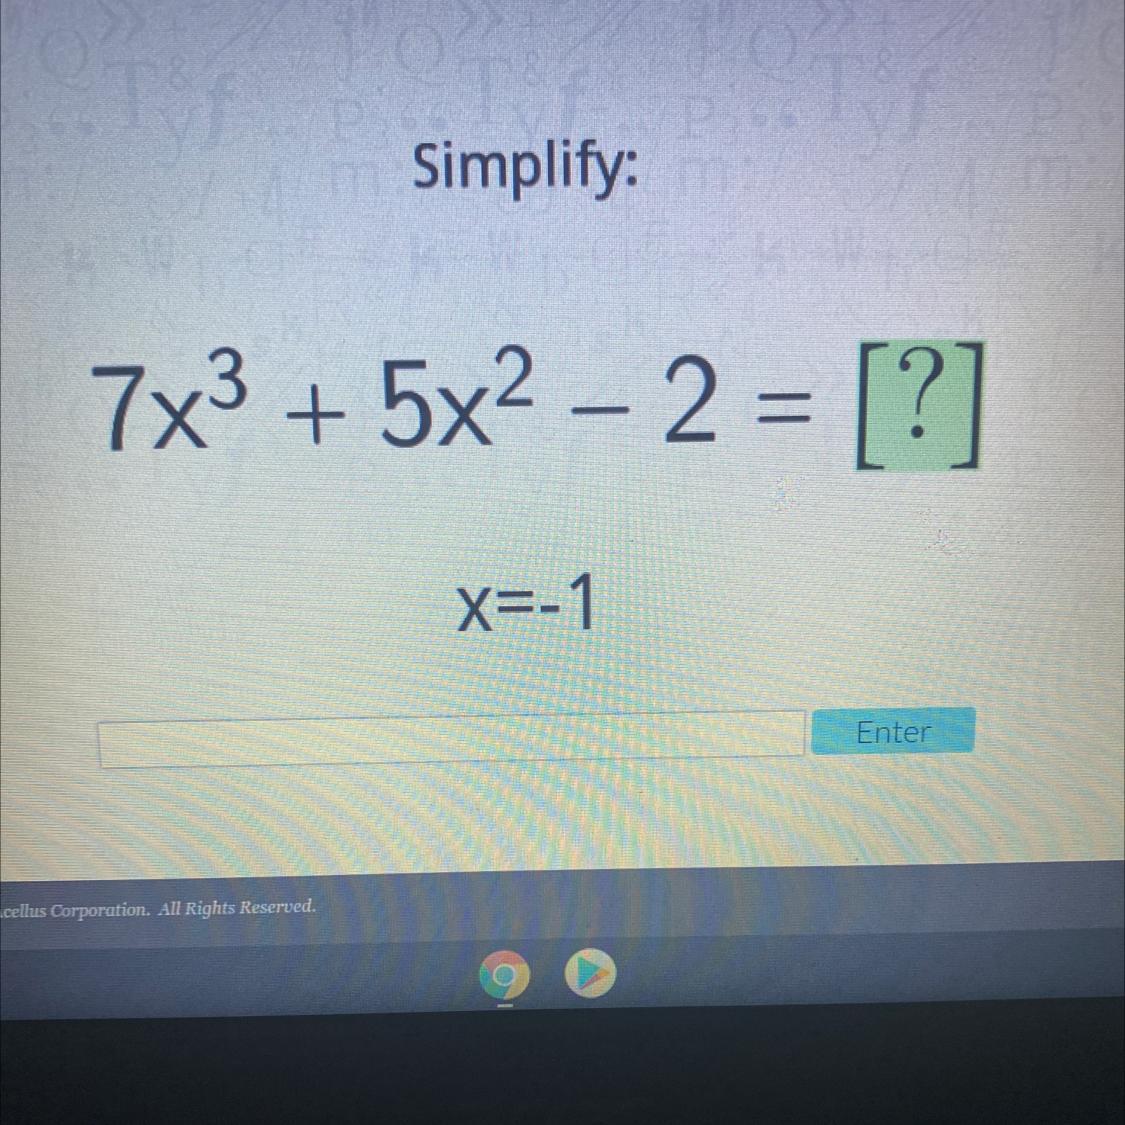 Simplify:7x3 + 5x2 2 = [?]X=-1